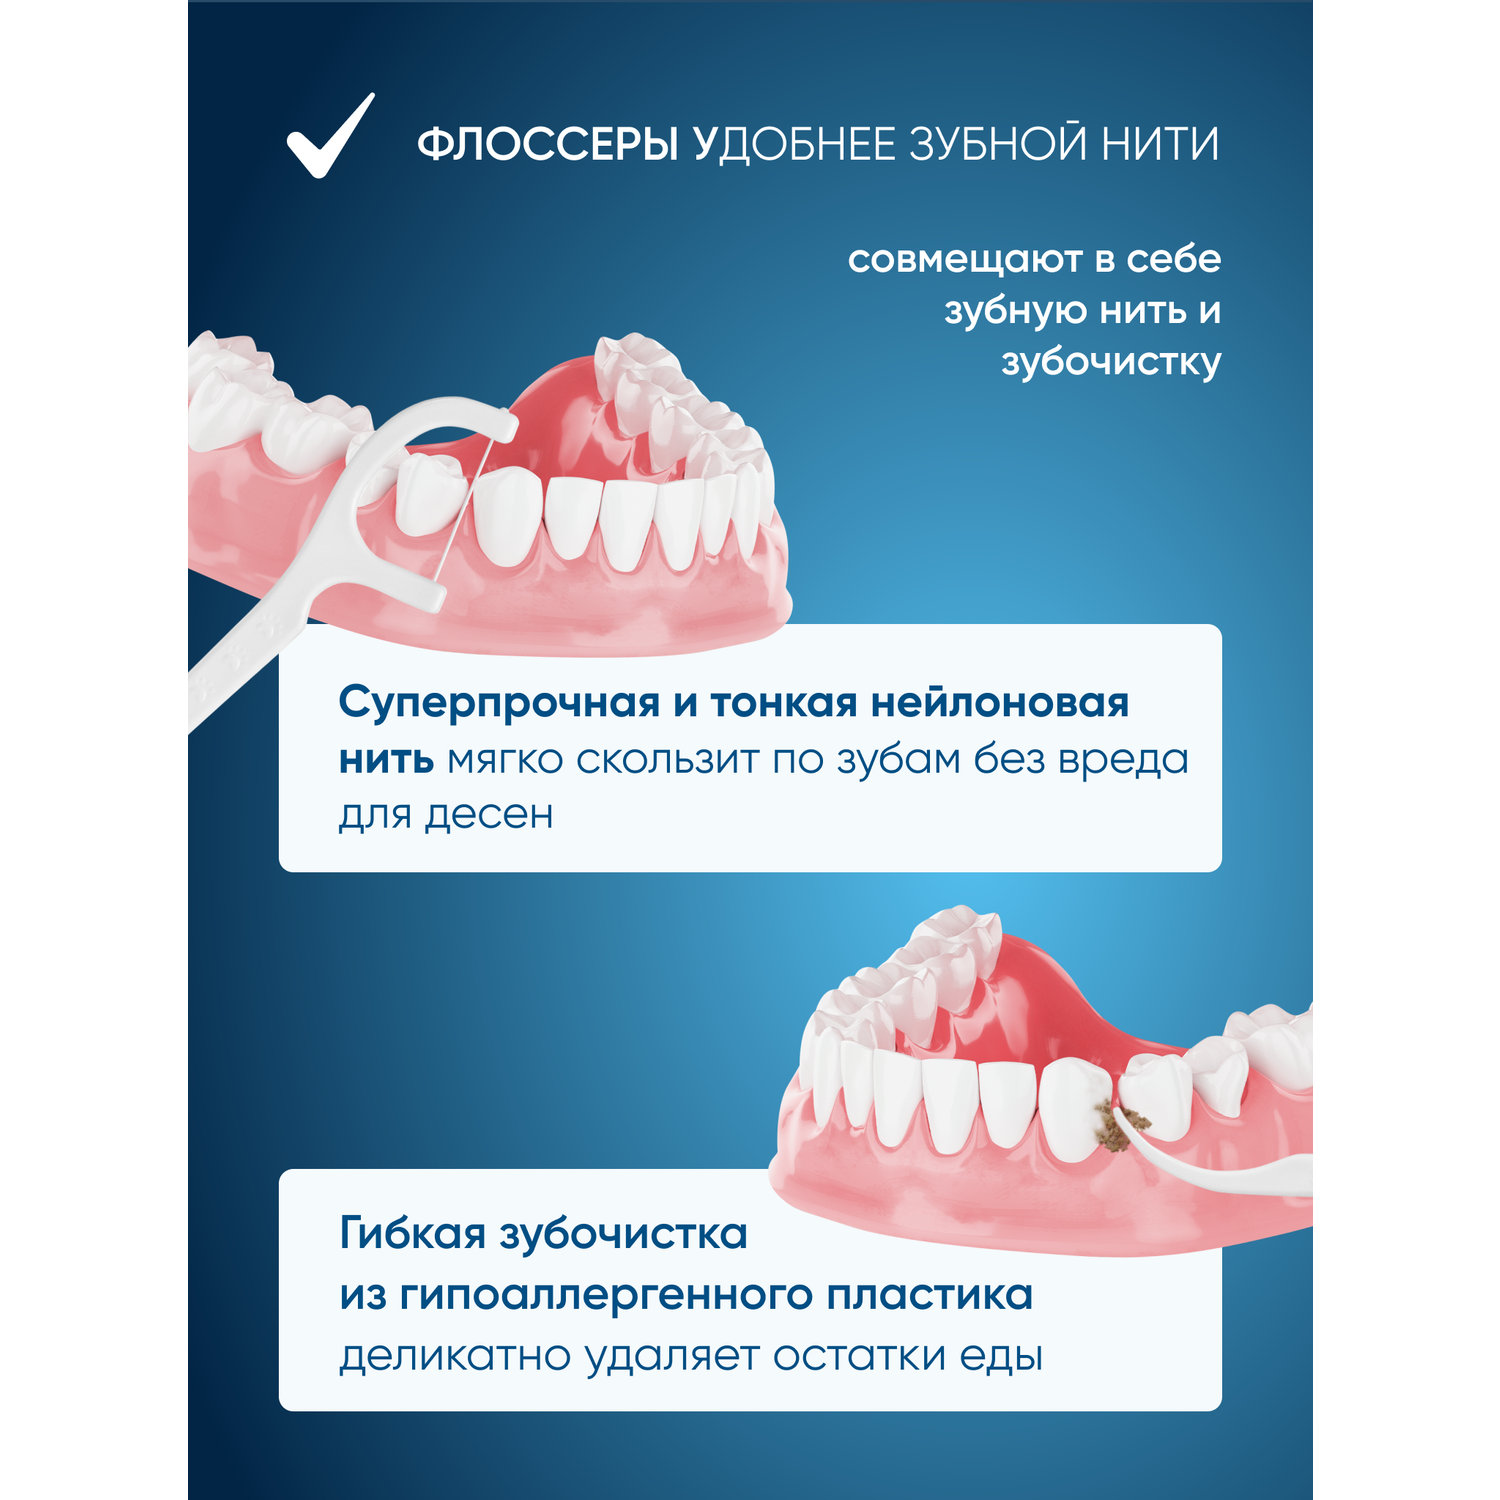 Зубная нить и зубочистка 2 в 1 PECHAM Flosser РС-600 - фото 3